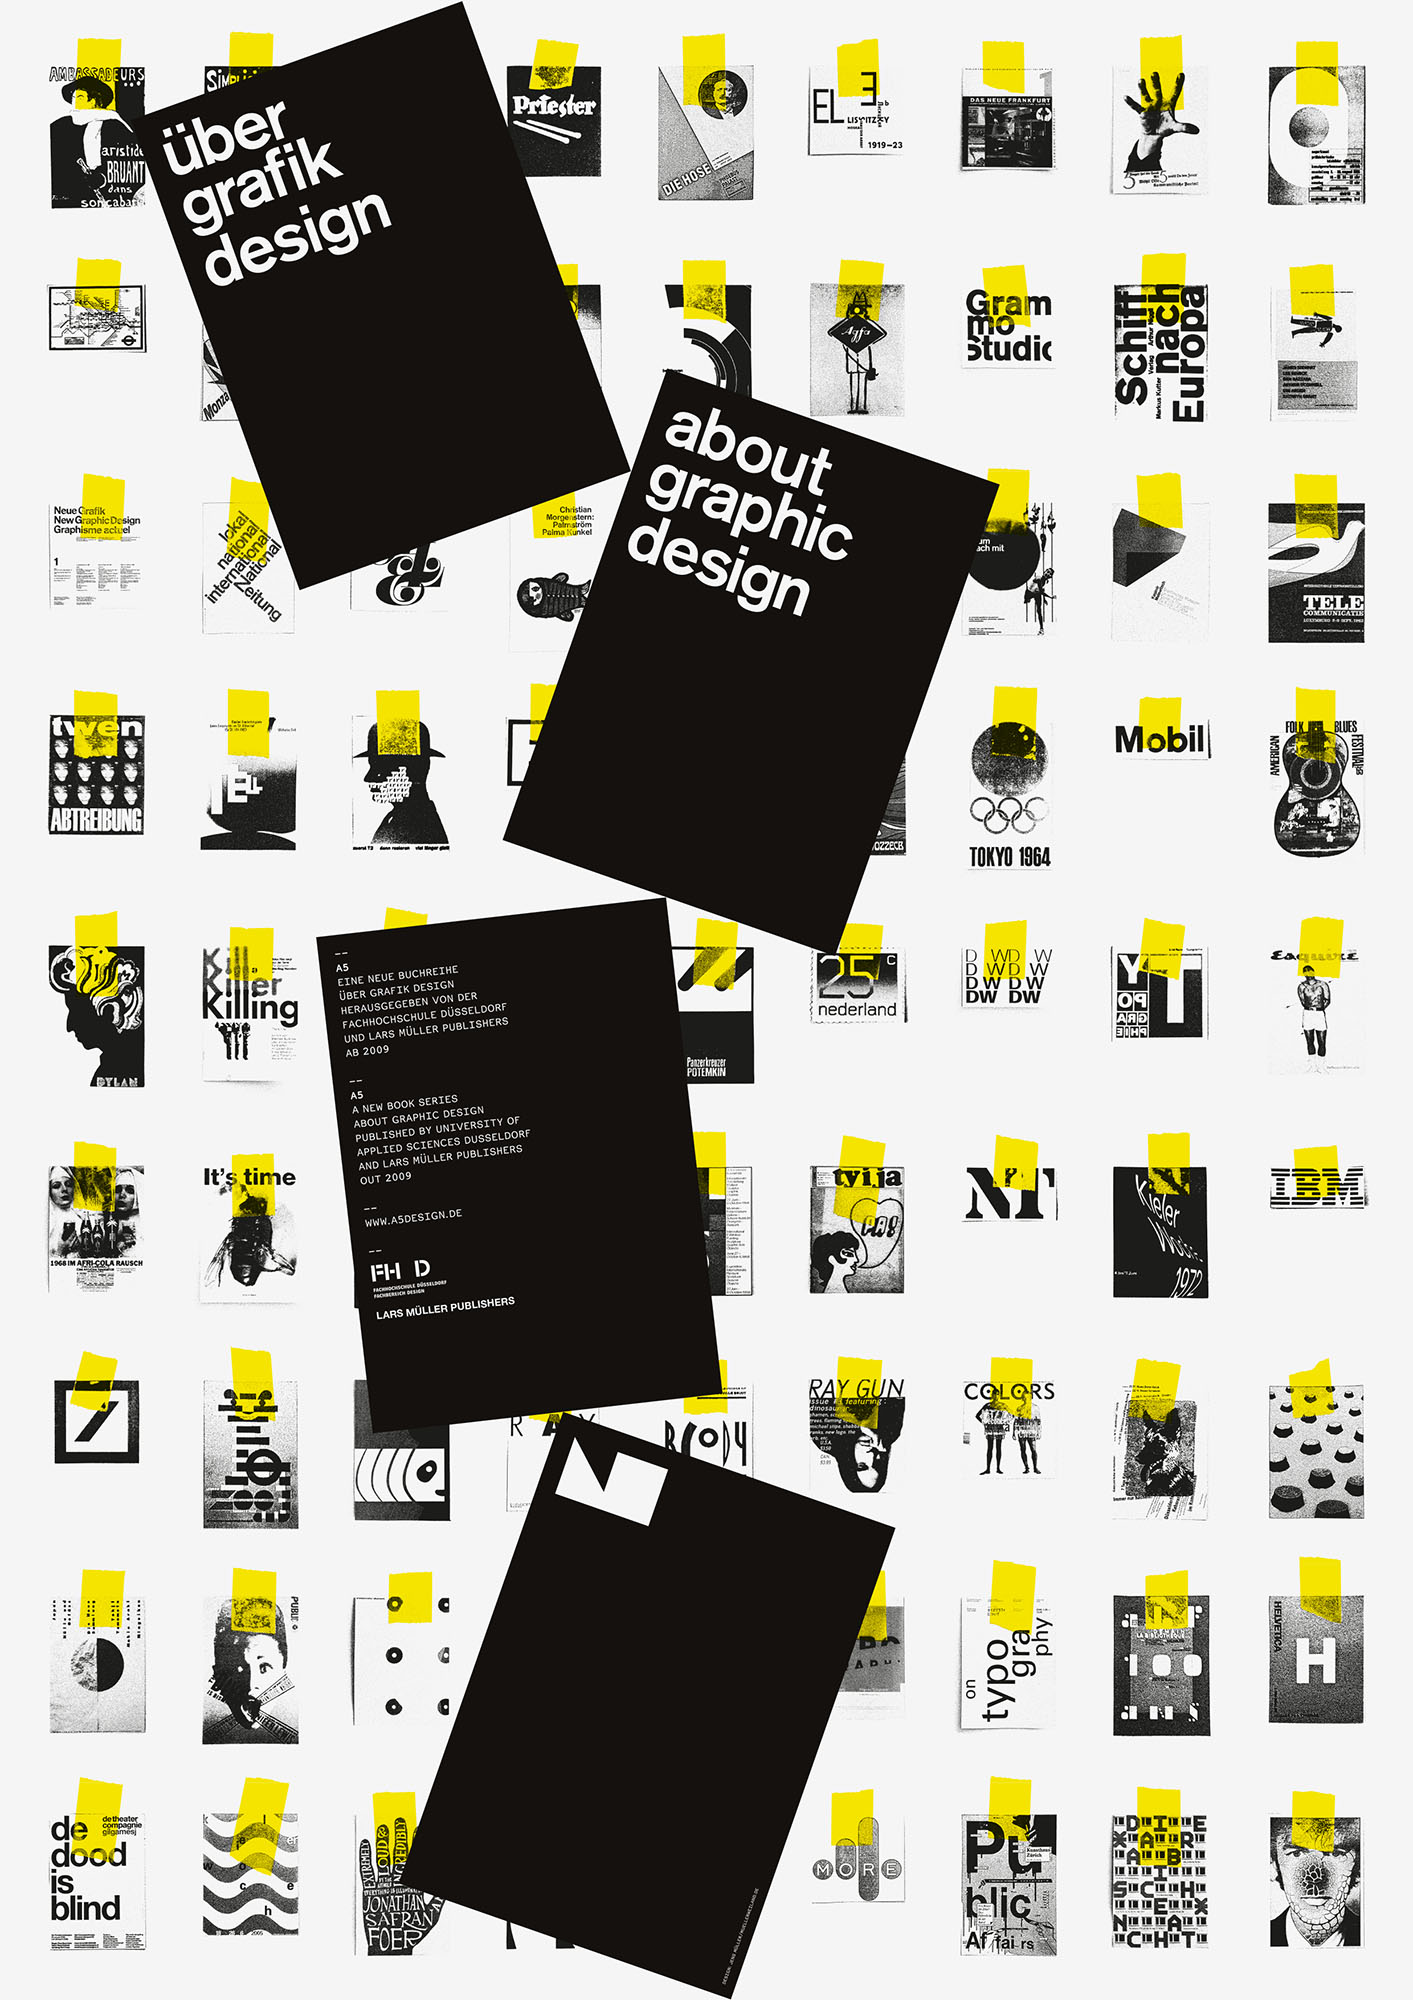 Gestaltet: Jens Müller, Titel: über grafik design, Jahr: 2009